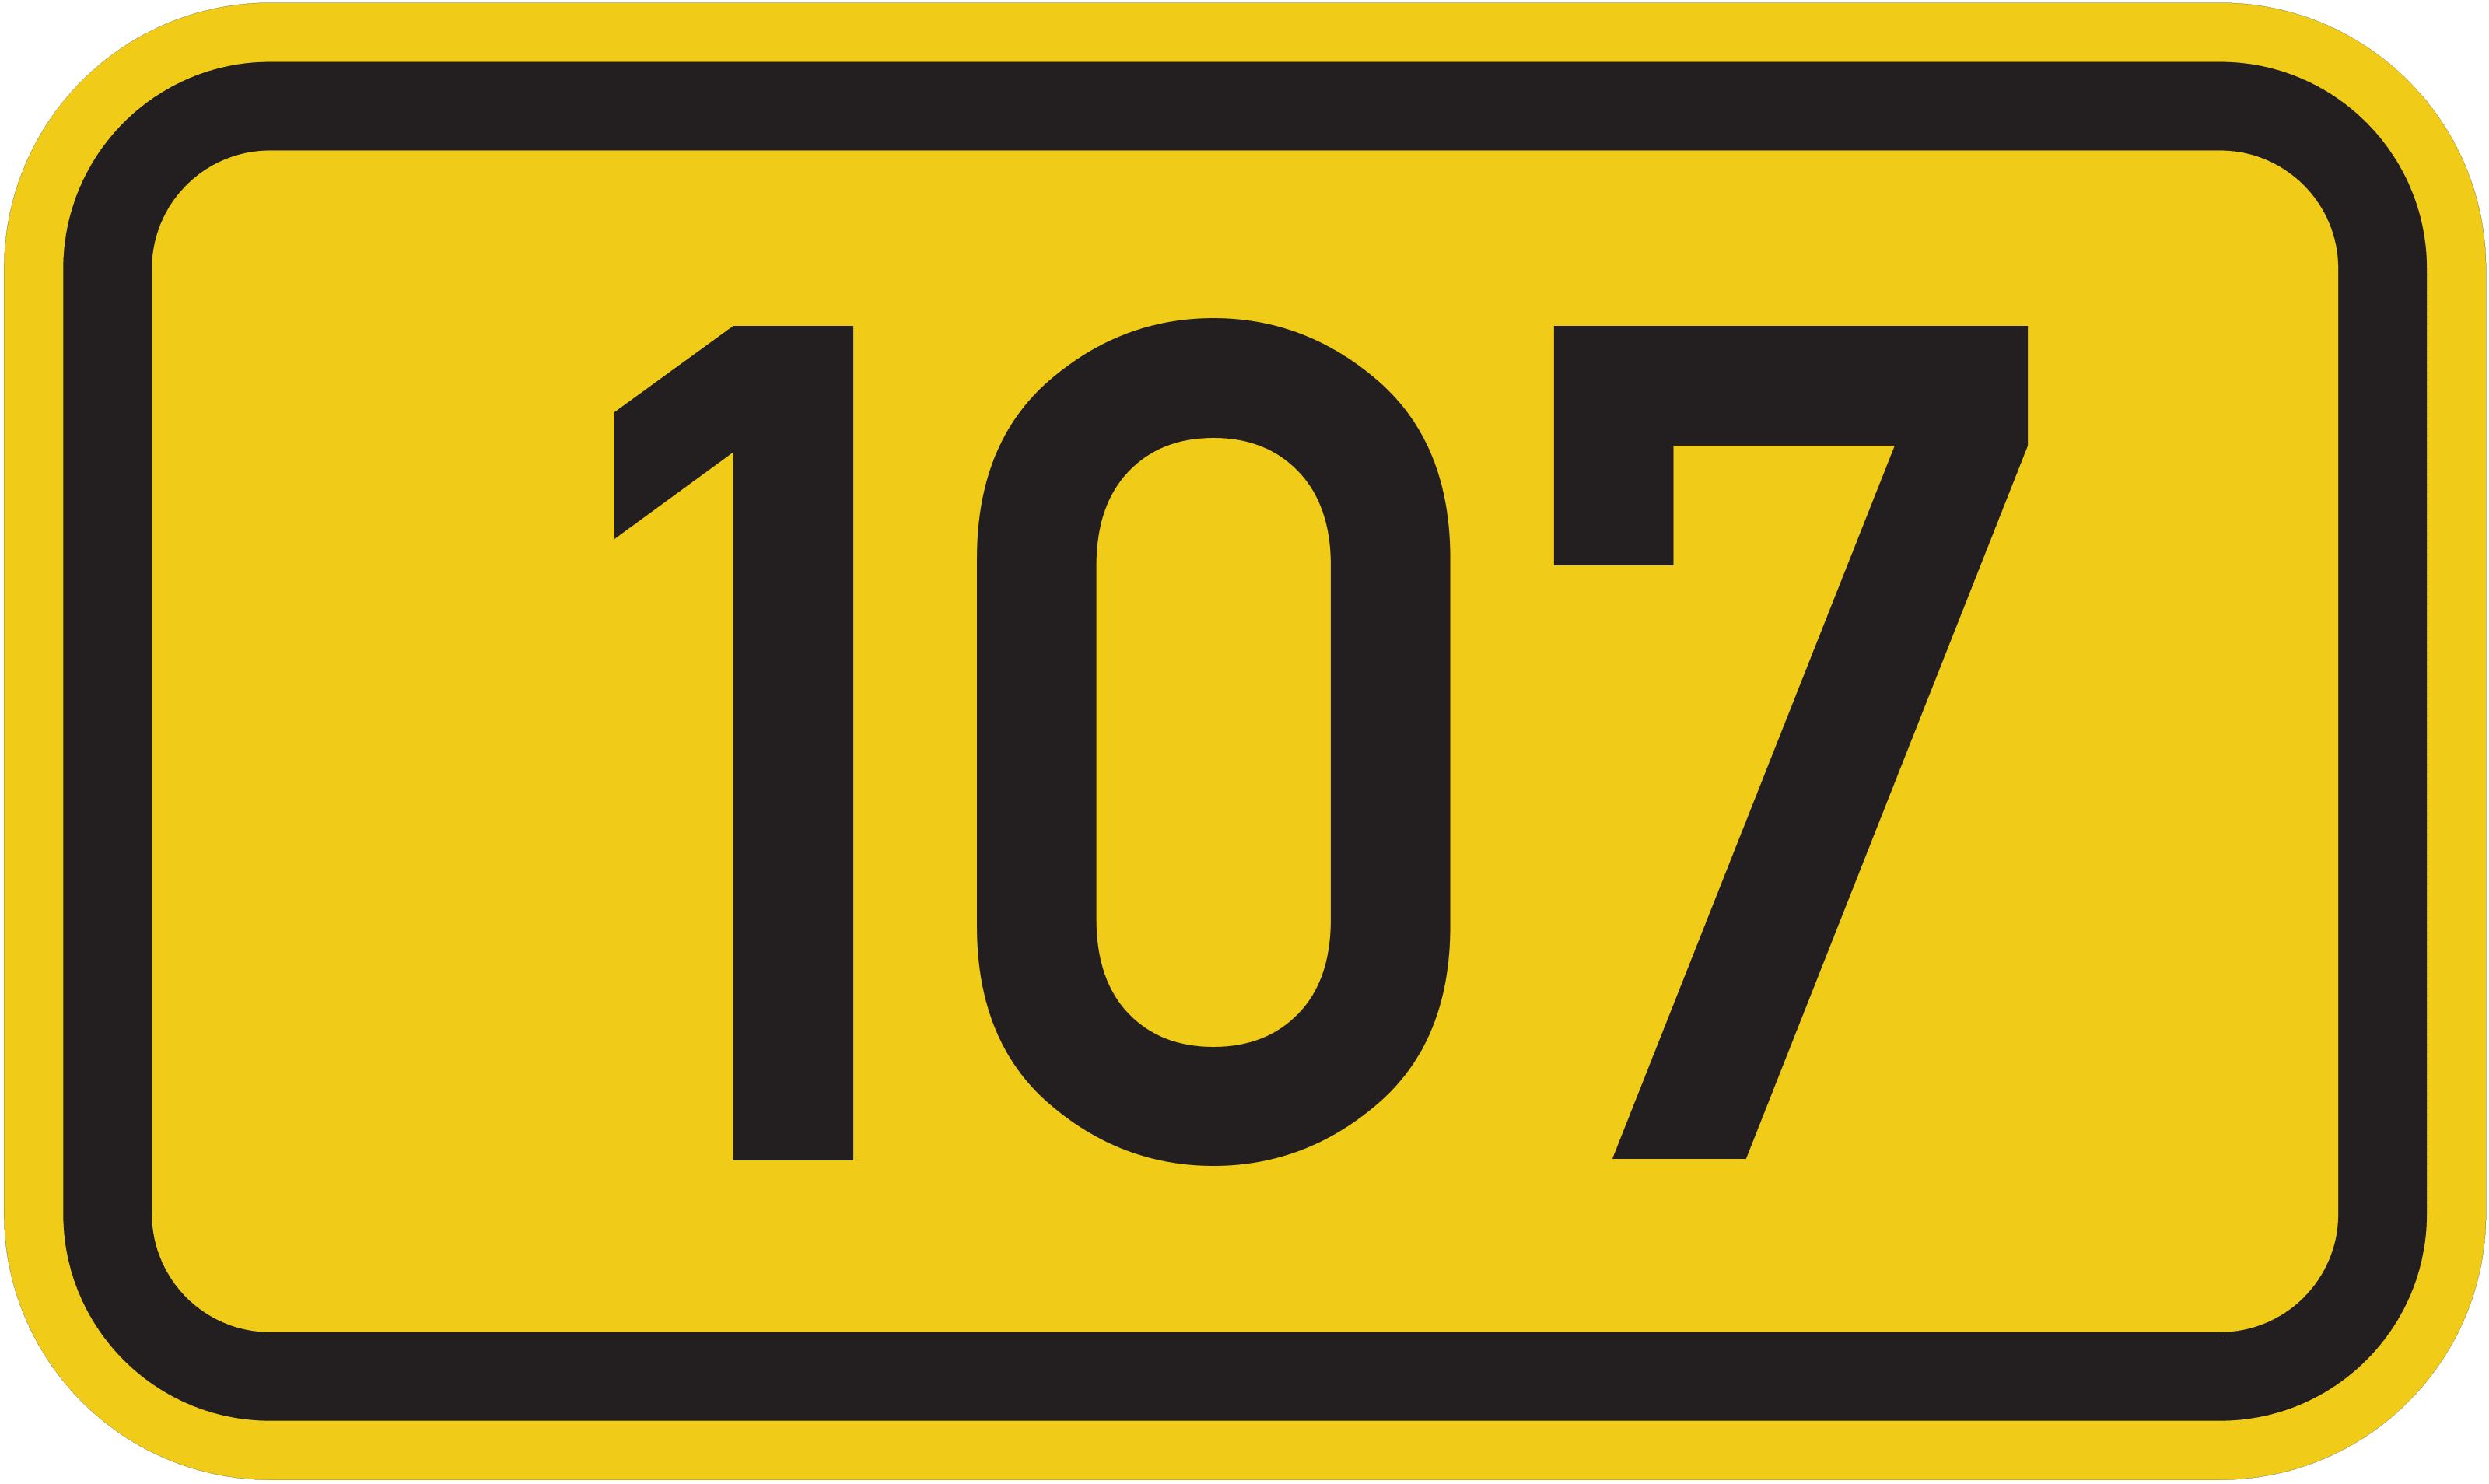 Bundesstraße 107